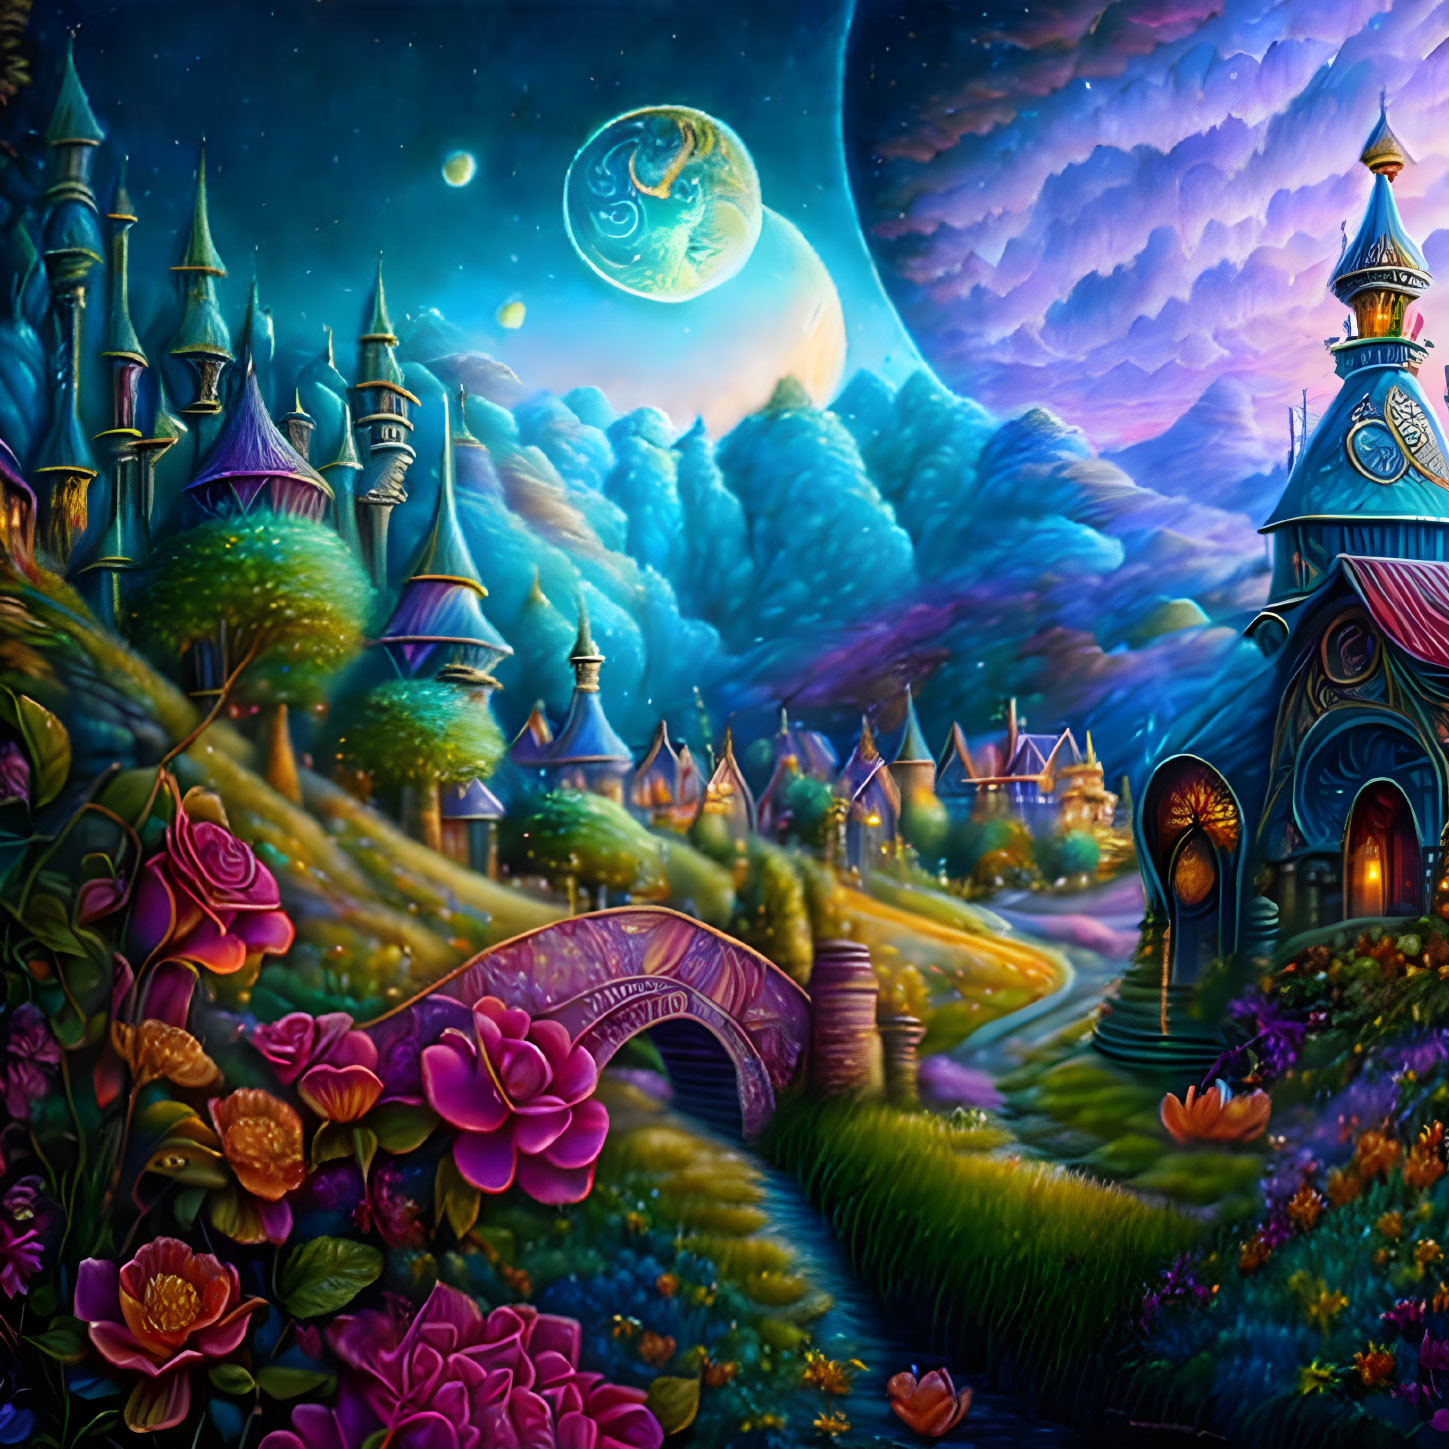 Colorful fantasy landscape with luminous buildings, moonlit sky, stone bridge